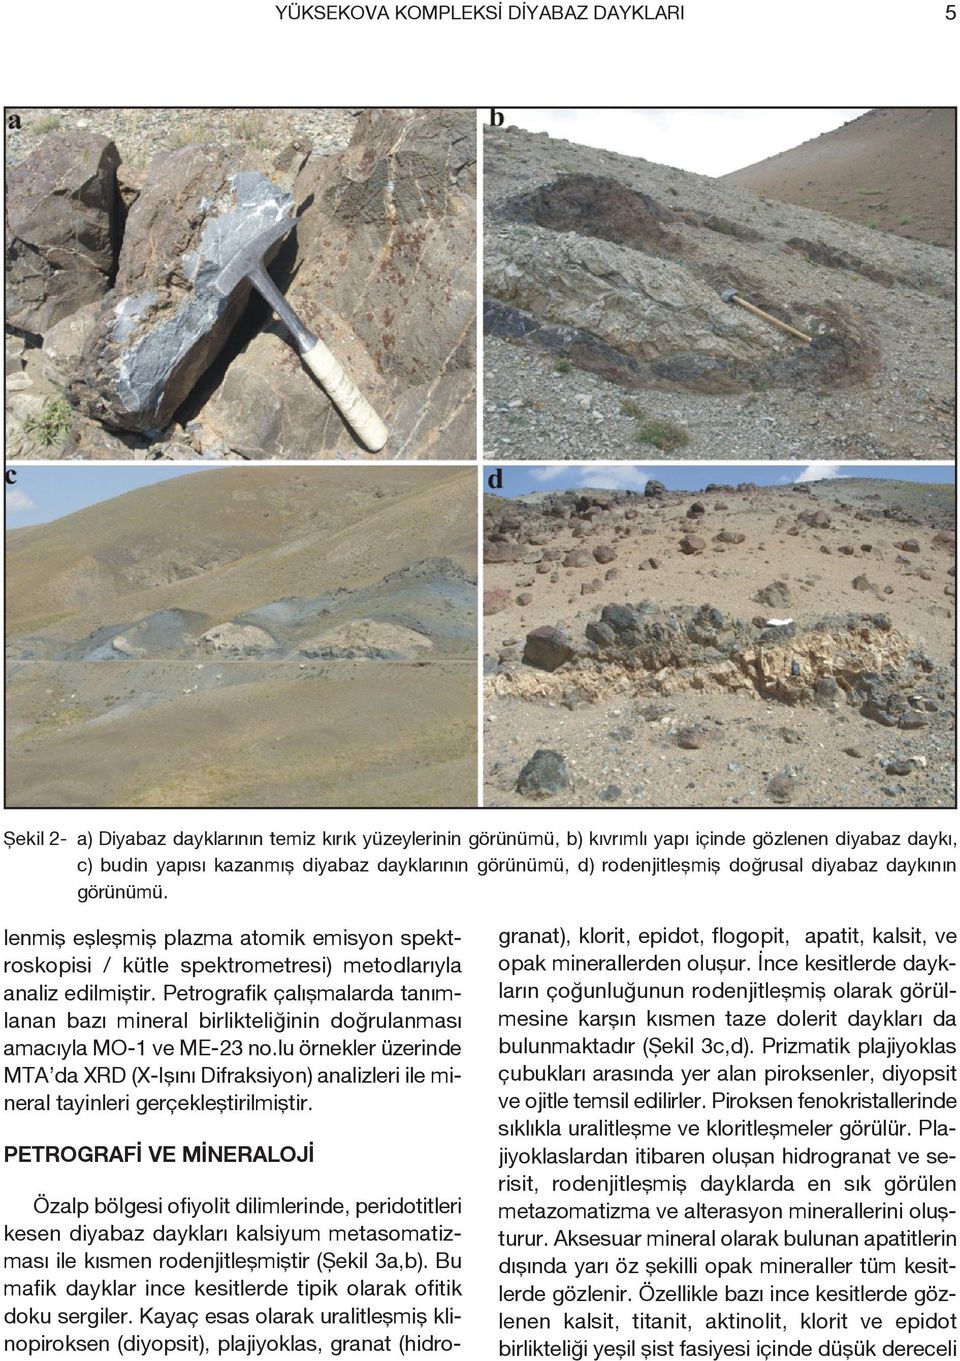 Petrografik çalışmalarda tanımlanan bazı mineral birlikteliğinin doğrulanması amacıyla MO-1 ve ME-23 no.